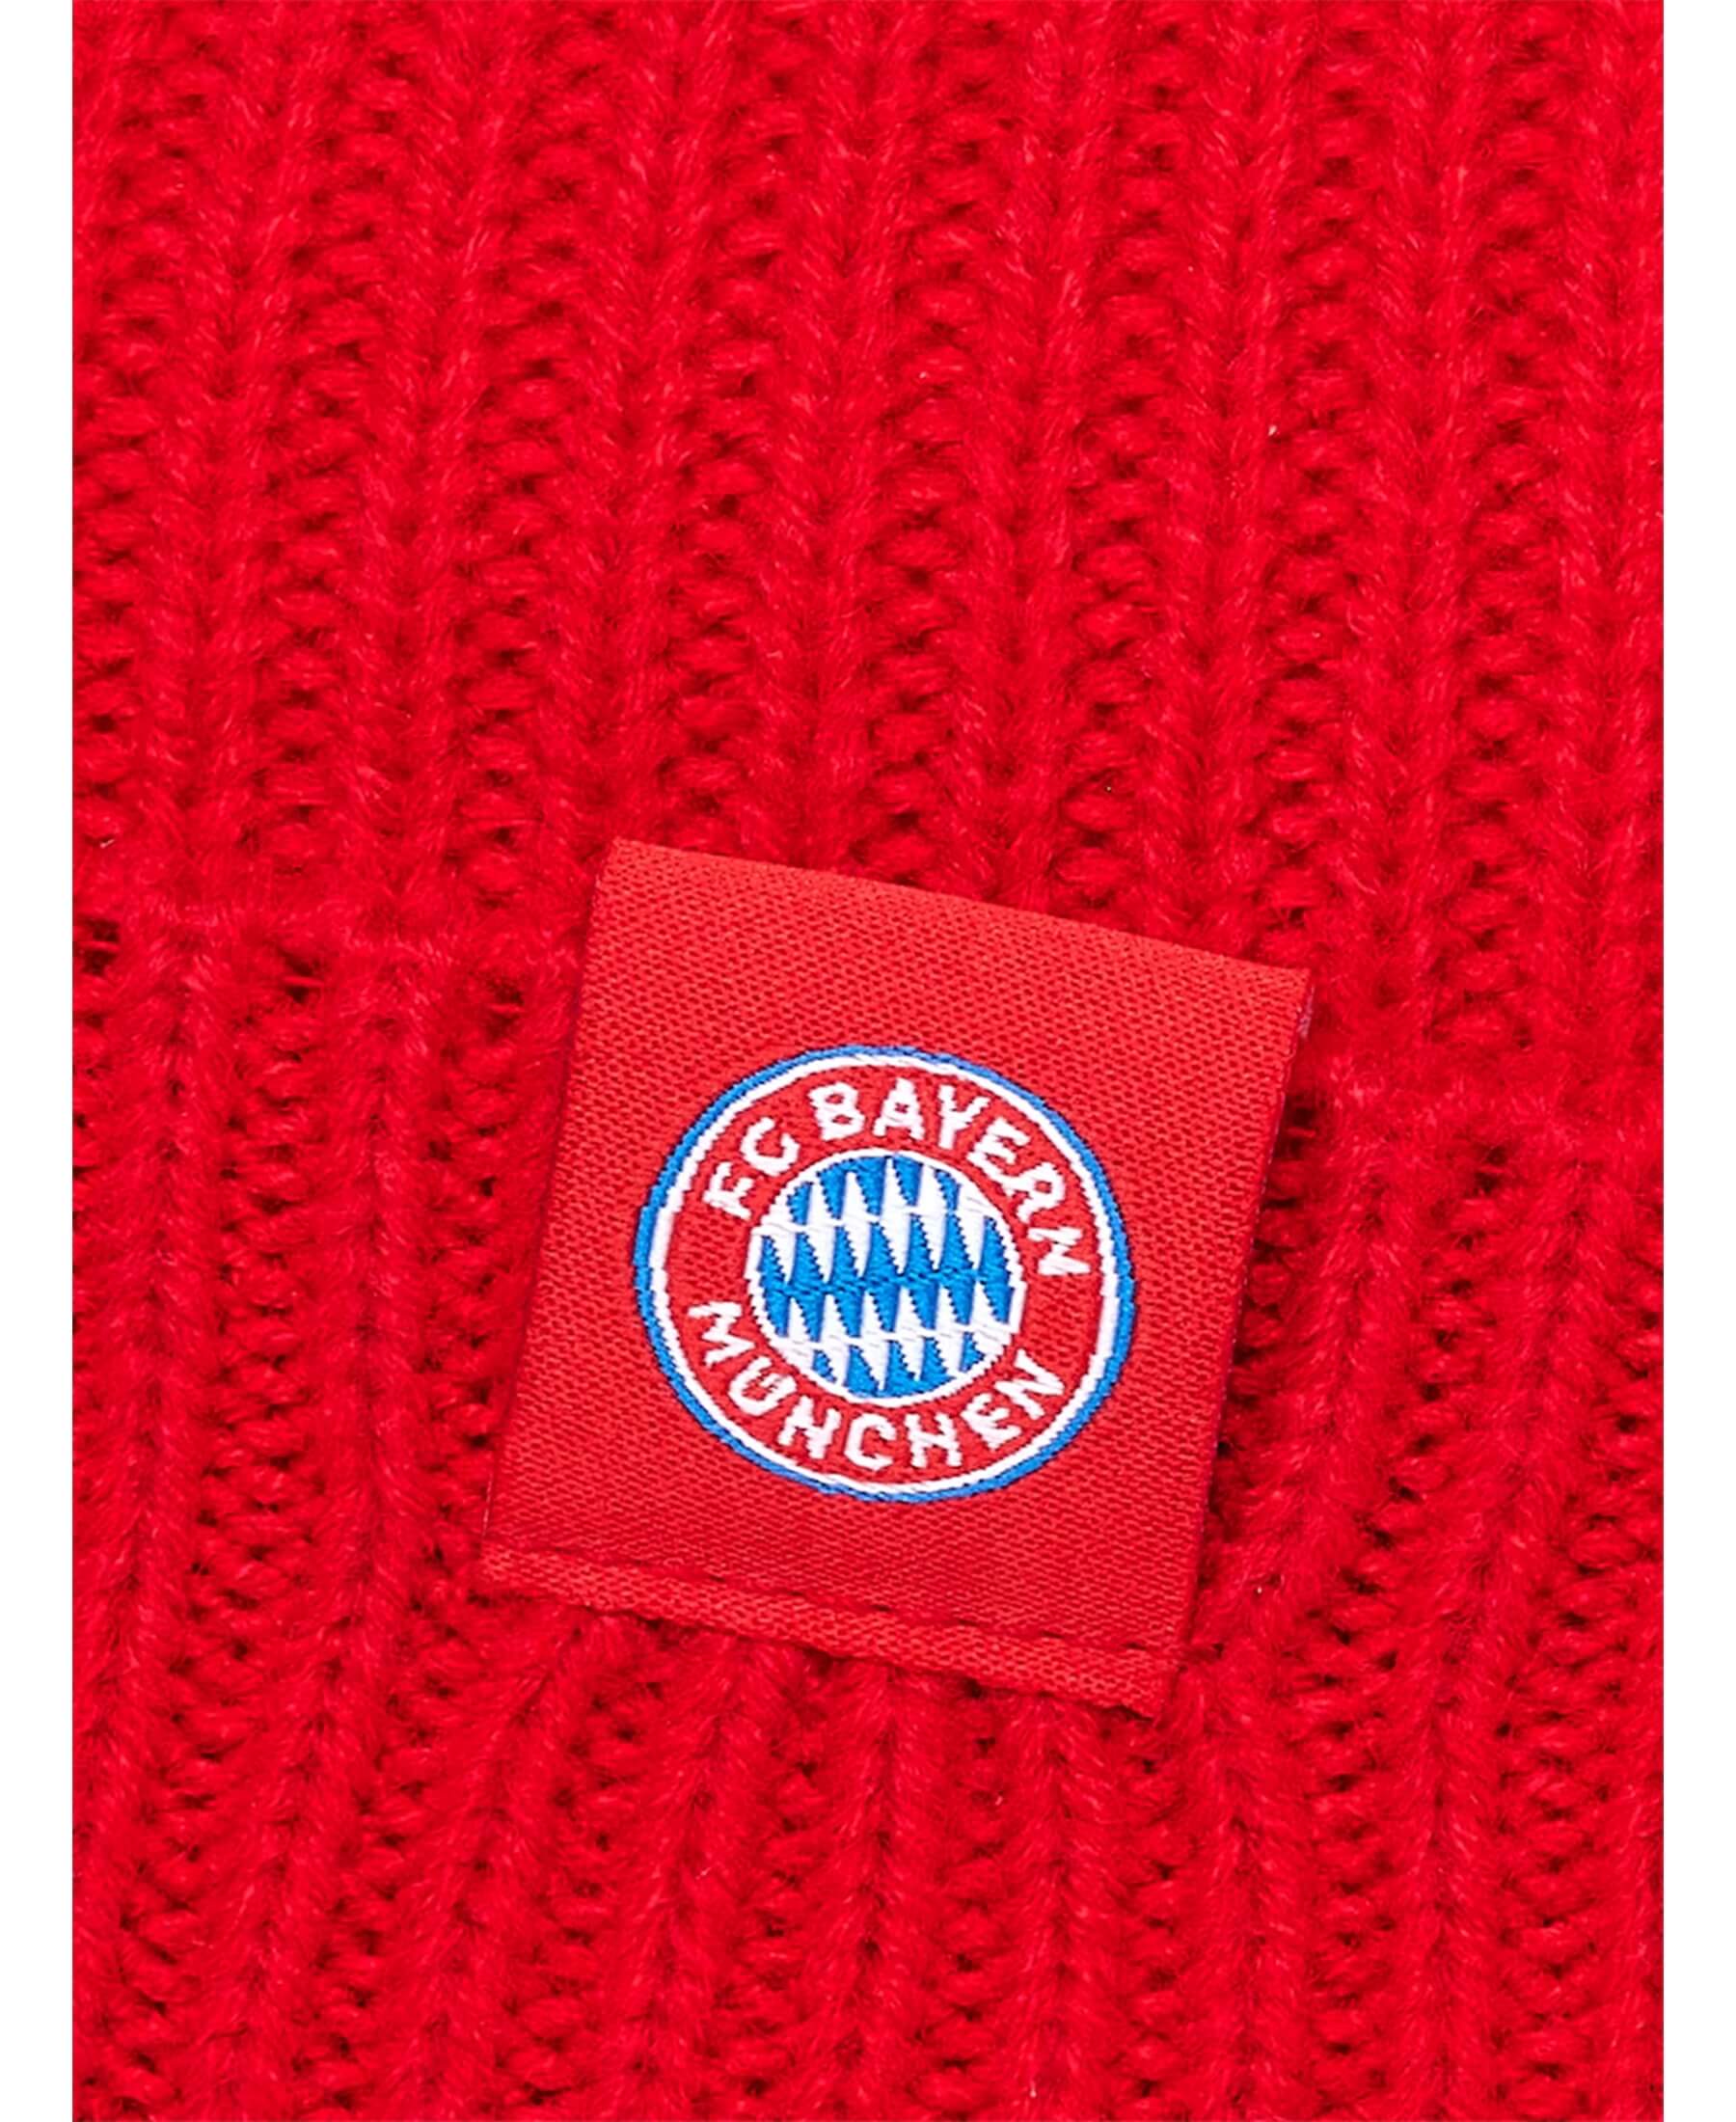 FC Bayern München FCB Cuffed Beanie Strickmütze in Rot. Stylische und warme Strickmütze für FC Bayern München Fans. Zeige deine Unterstützung mit dieser hochwertigen Beanie. Jetzt im Onlineshop von SHOP4TEAMSPORT erhältlich. Bestelle noch heute und sei bereit für die nächste Saison. Schneller Versand und exzellenter Kundenservice.